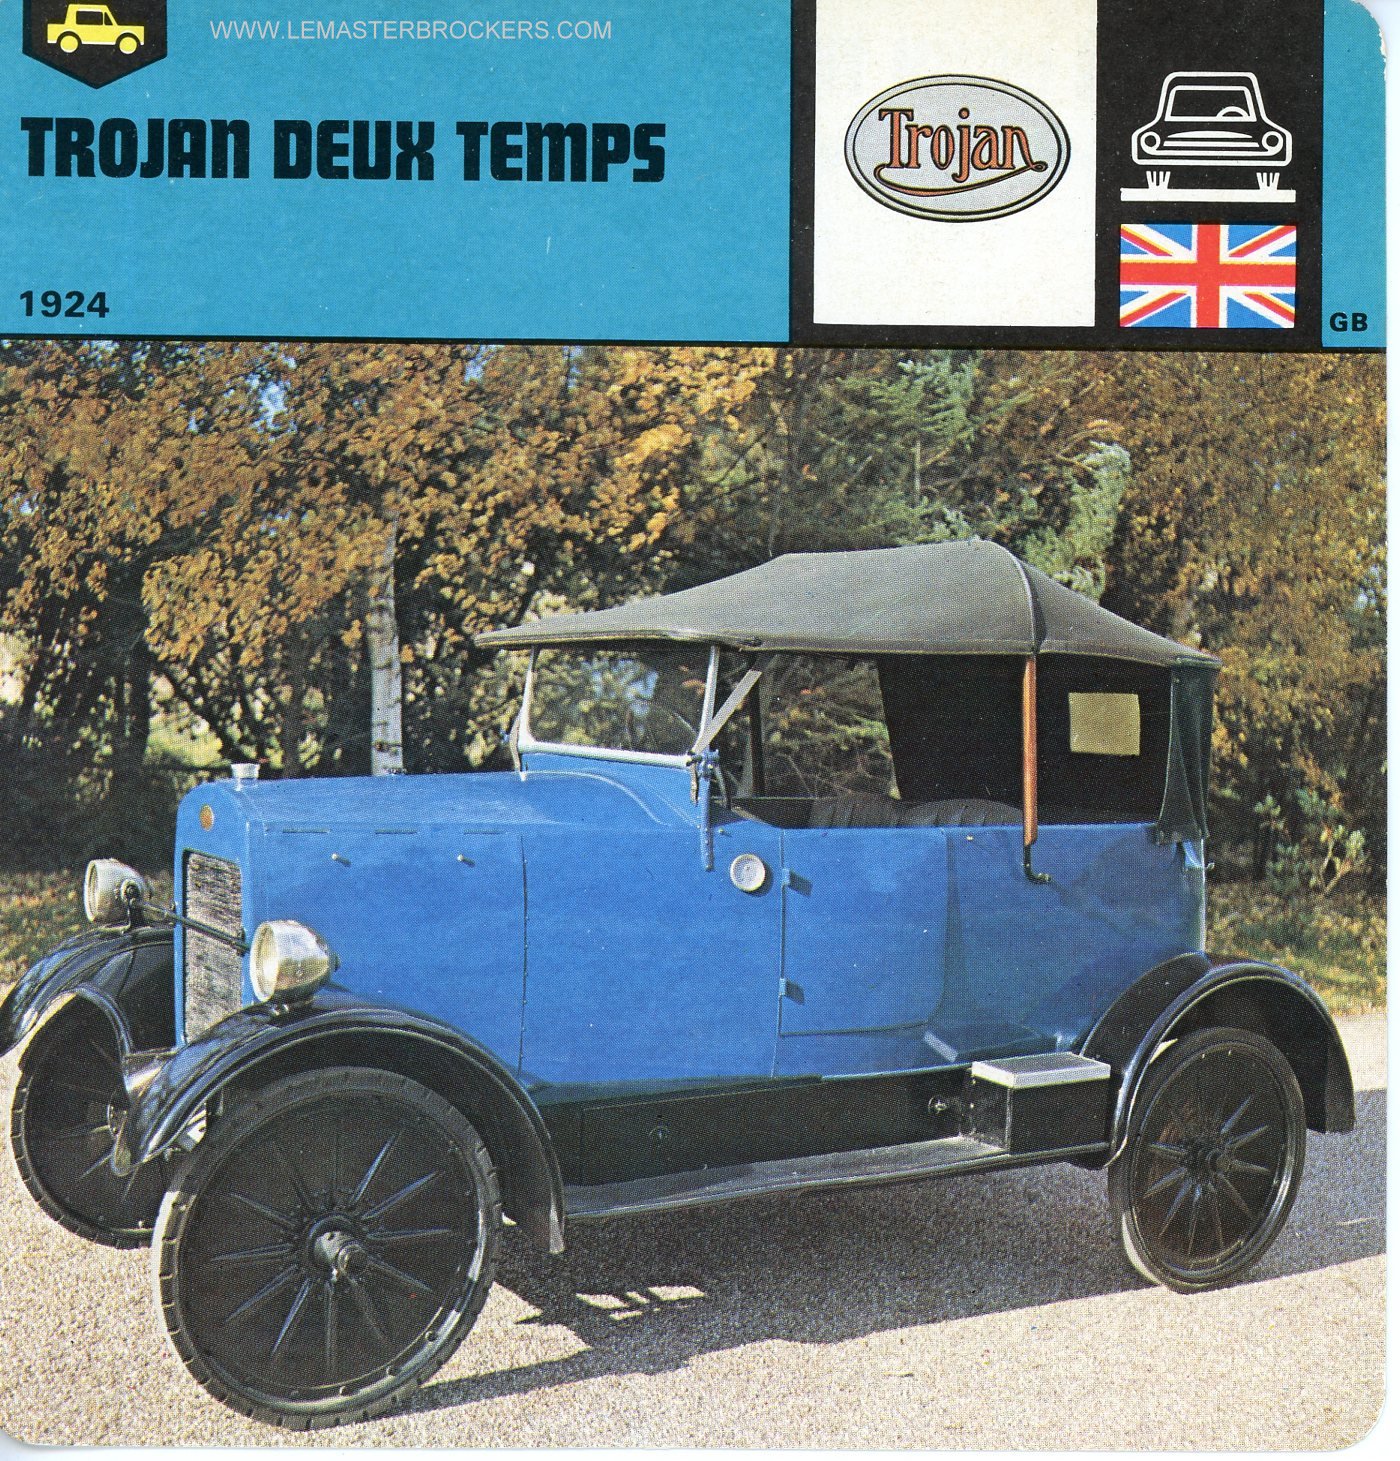 FICHE TROJAN DEUX TEMPS 1924